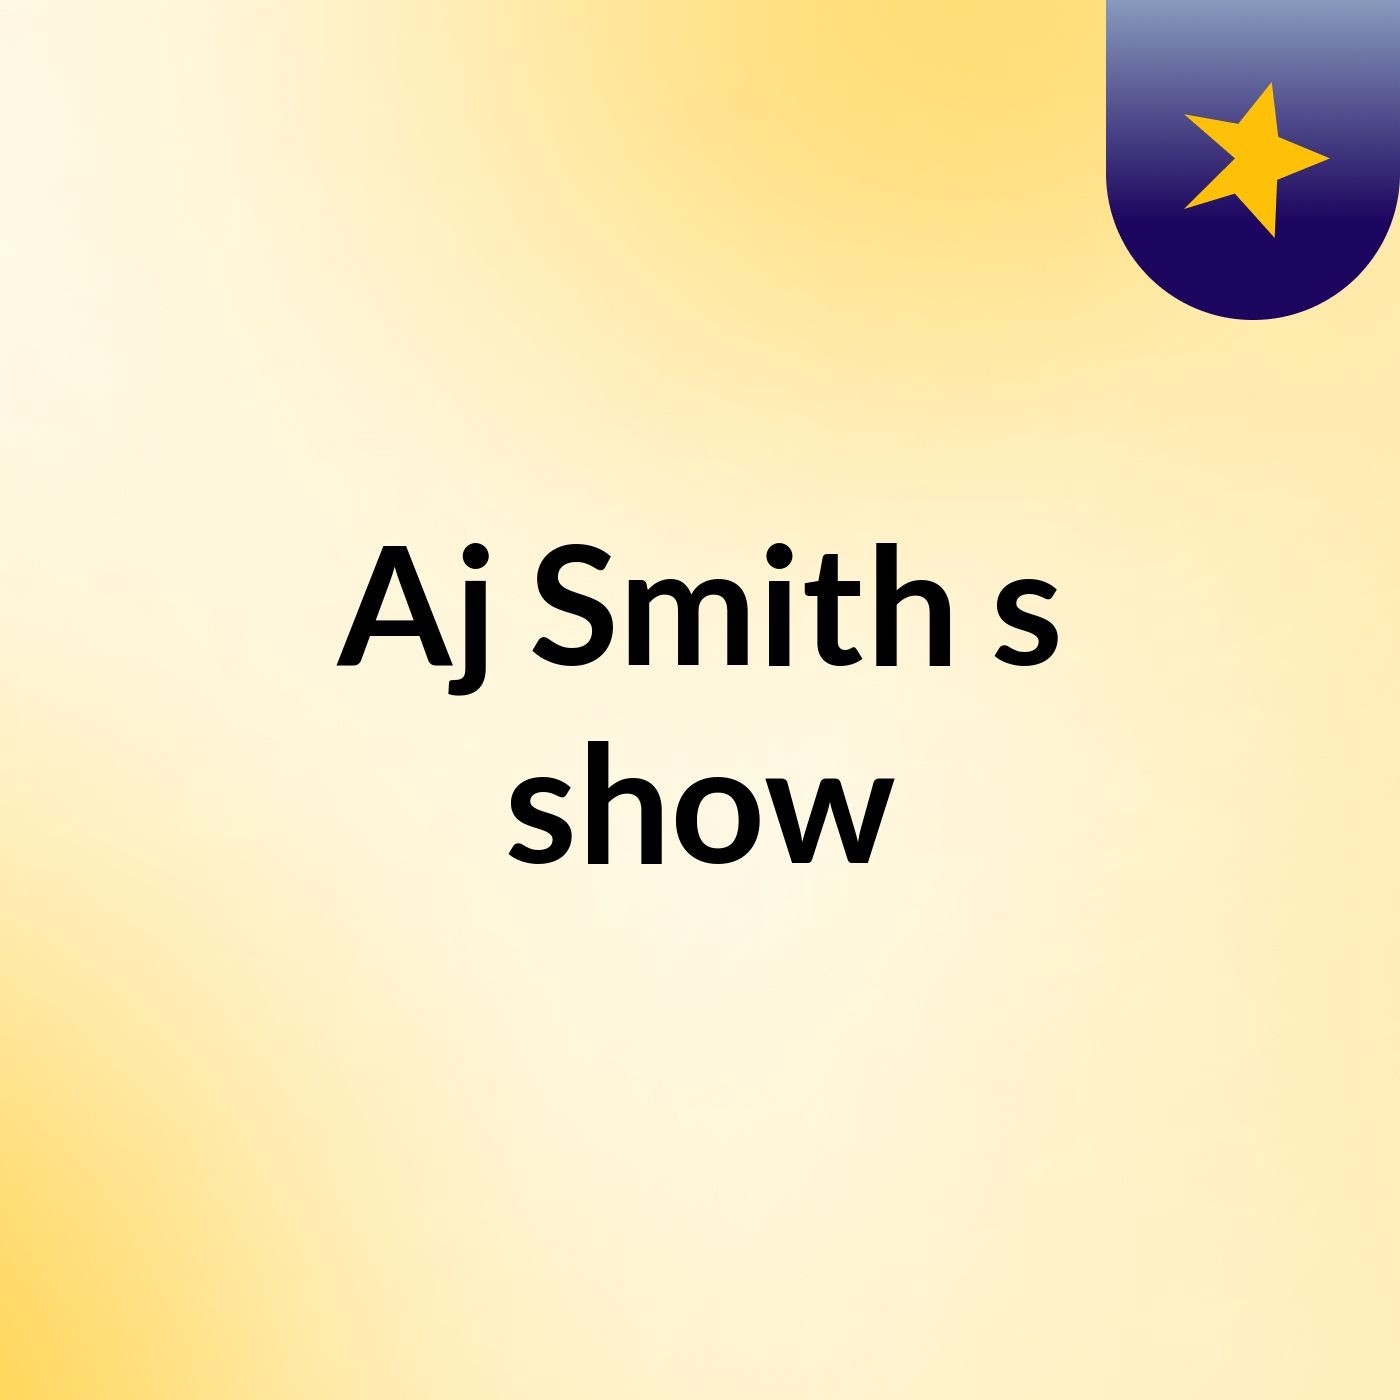 Episode 6 - Aj Smith's show